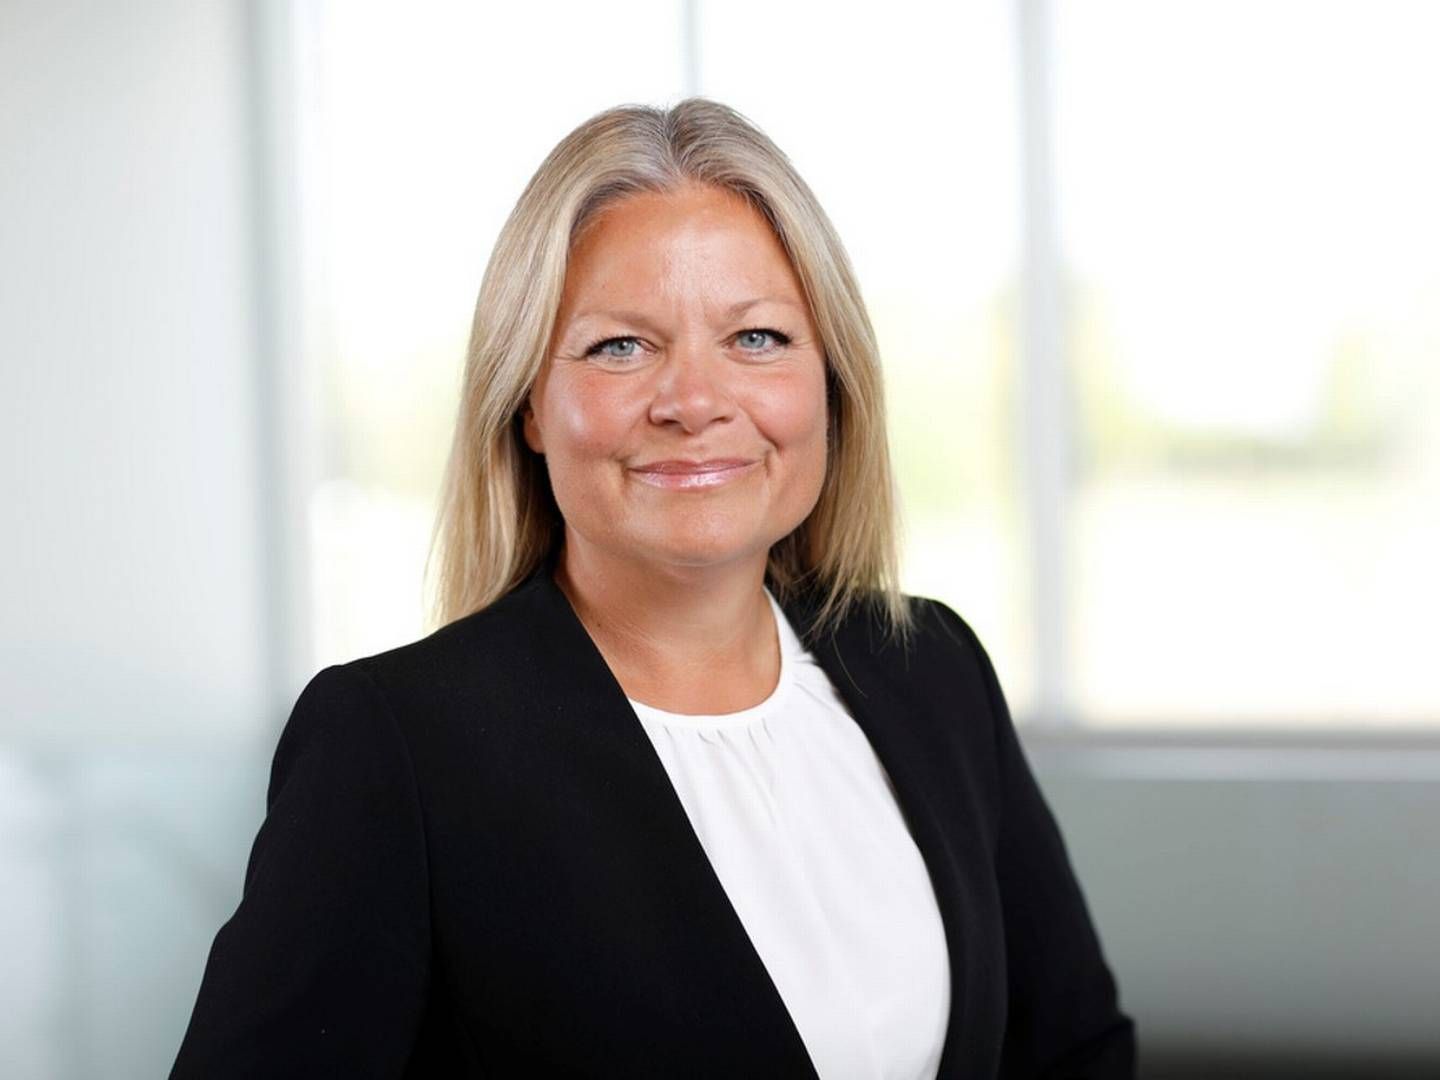 Marlene Holmgaard Fris er kommerciel direktør hos Movia. | Foto: Pr / Movia